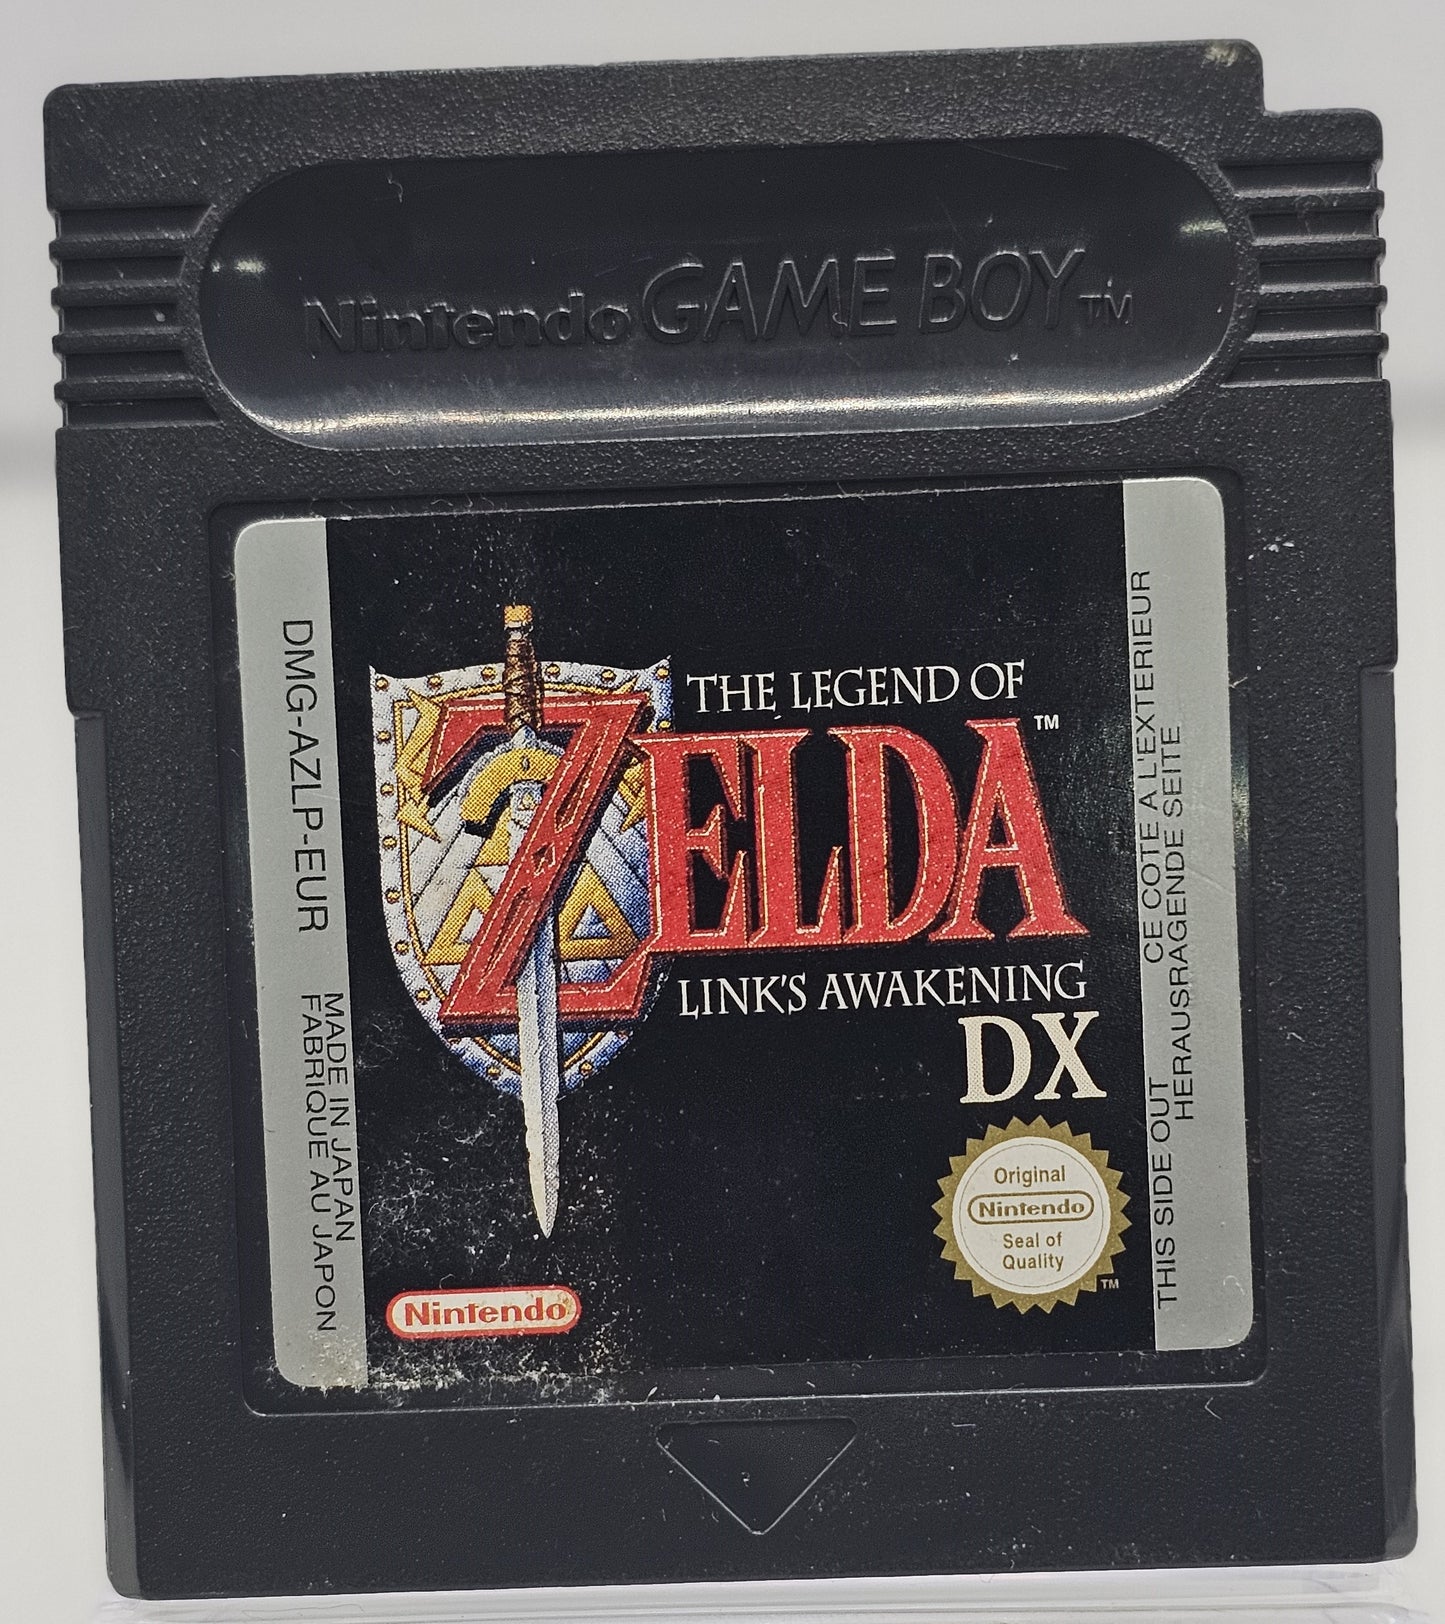 Gameboy Legend of Zelda Links awakning DX